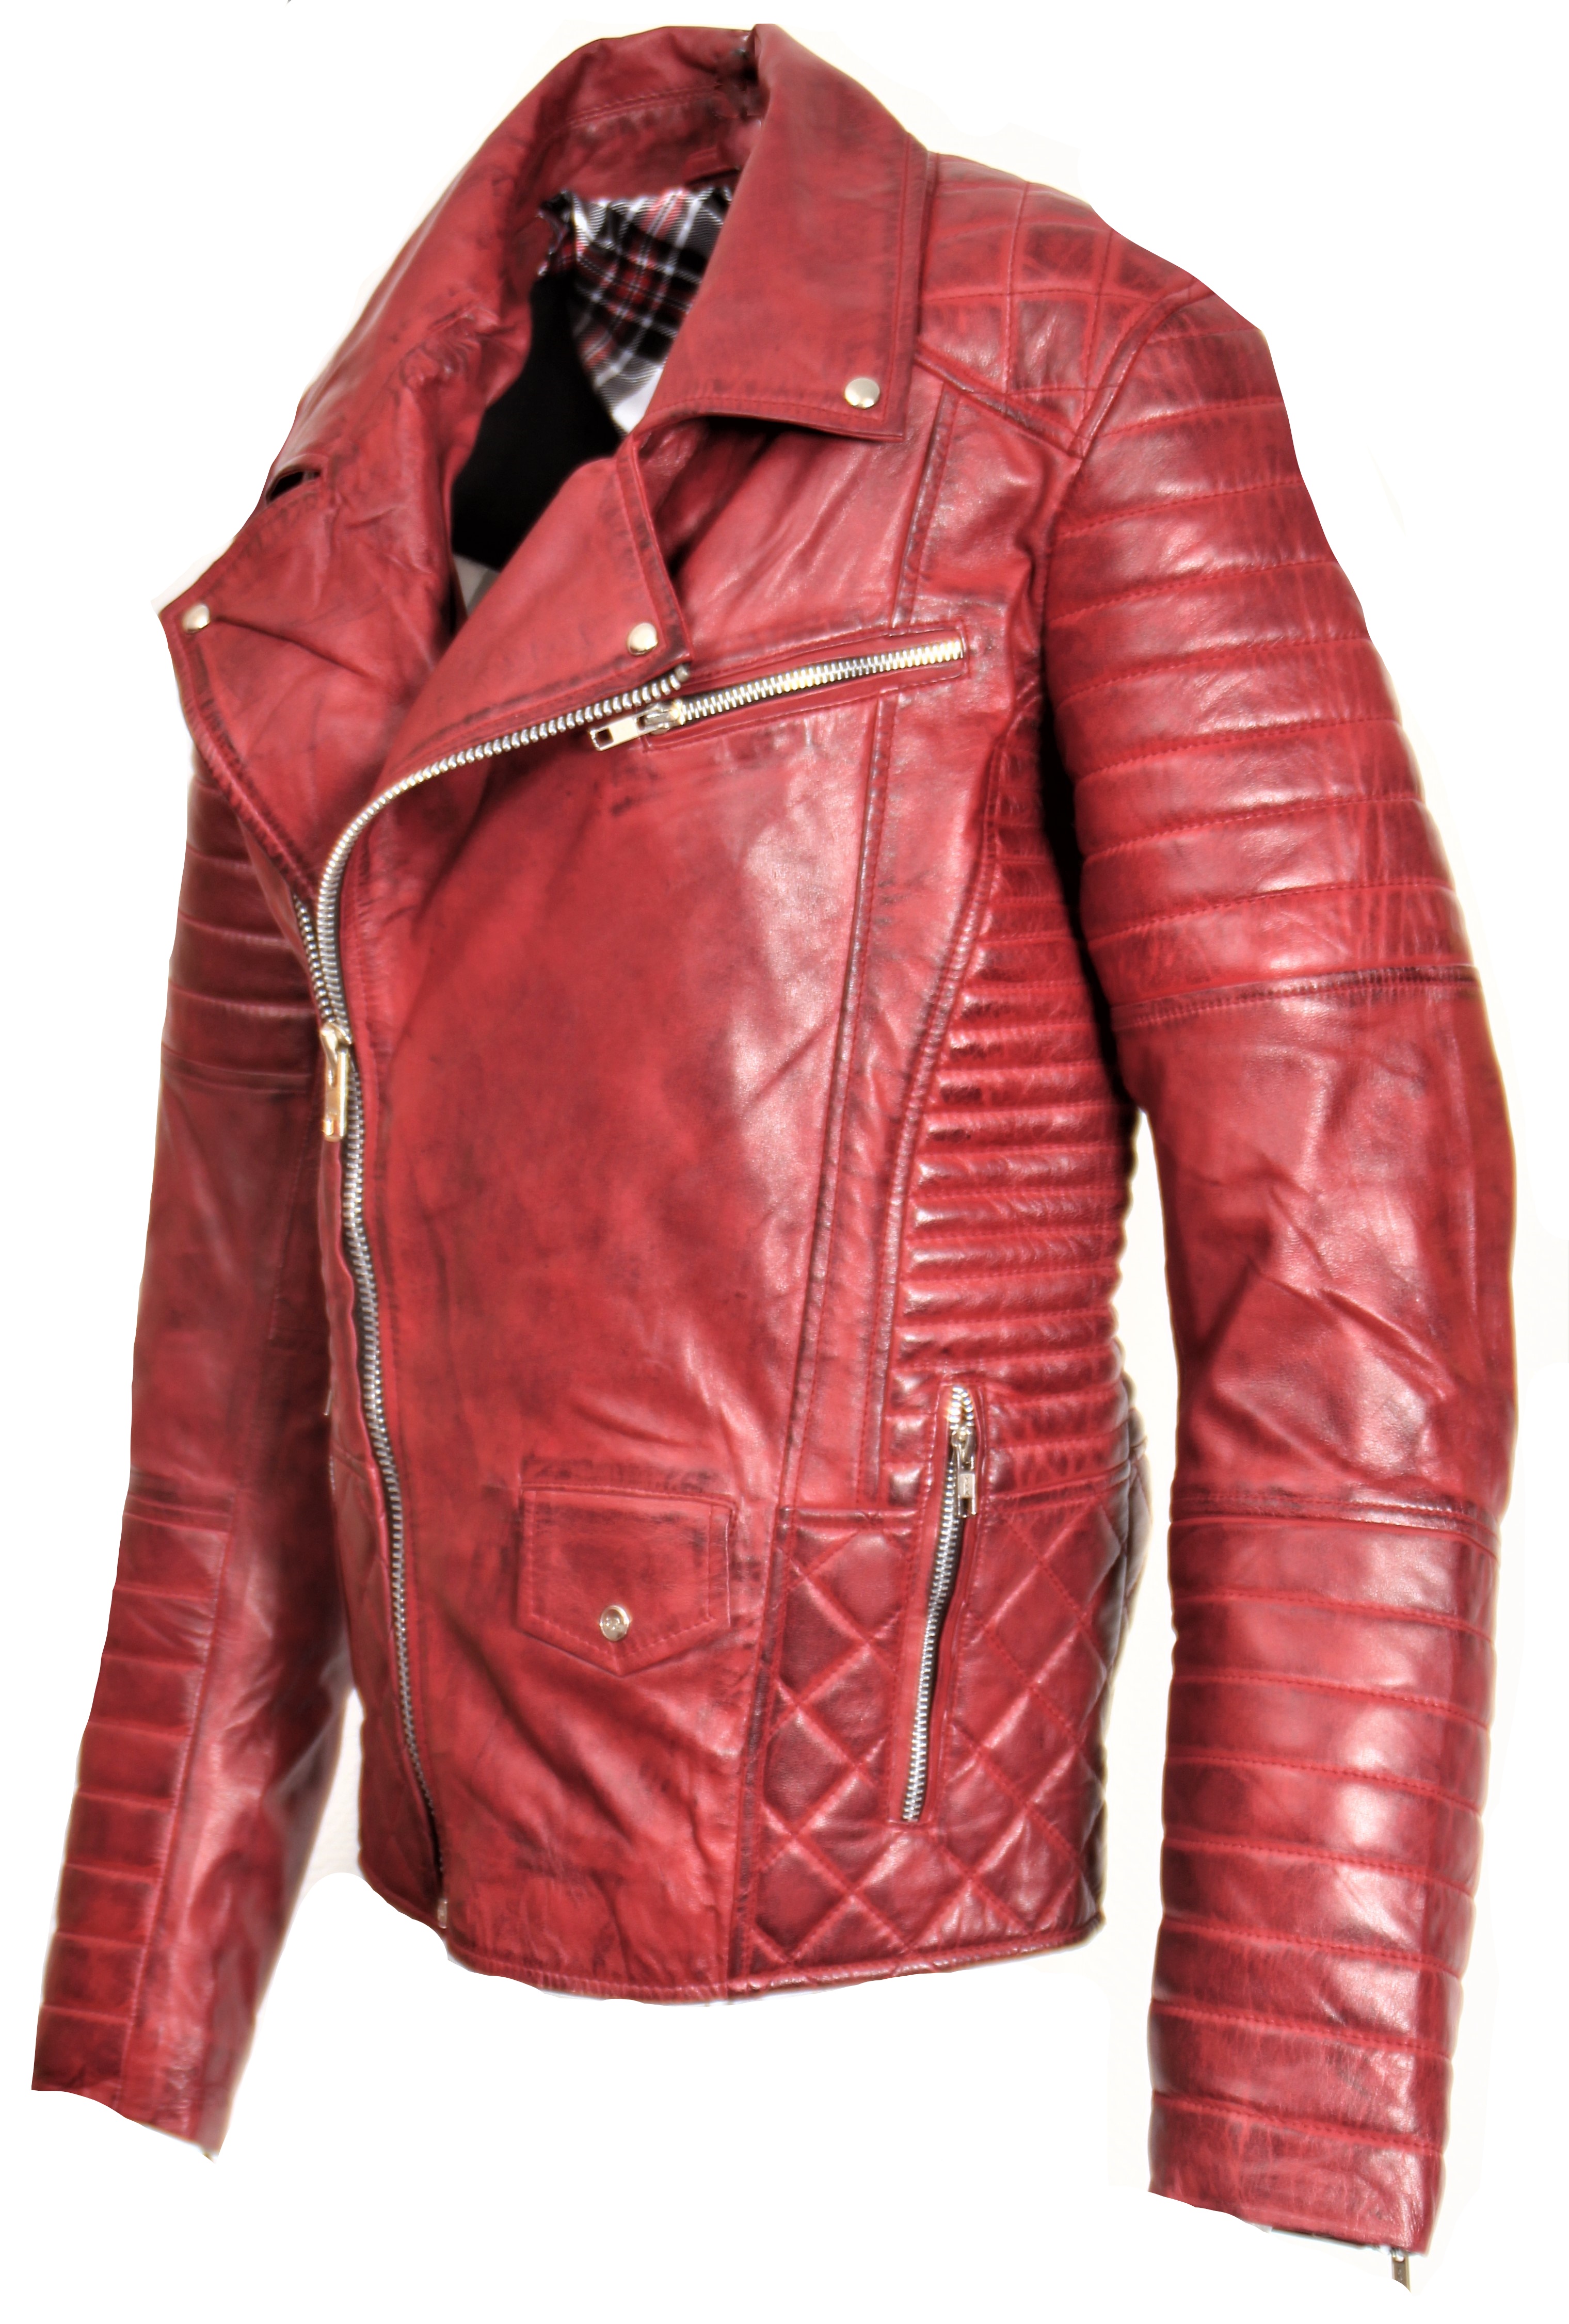 GENUINE Leather Jacket Biker Jacket USED LOOK dark red Men